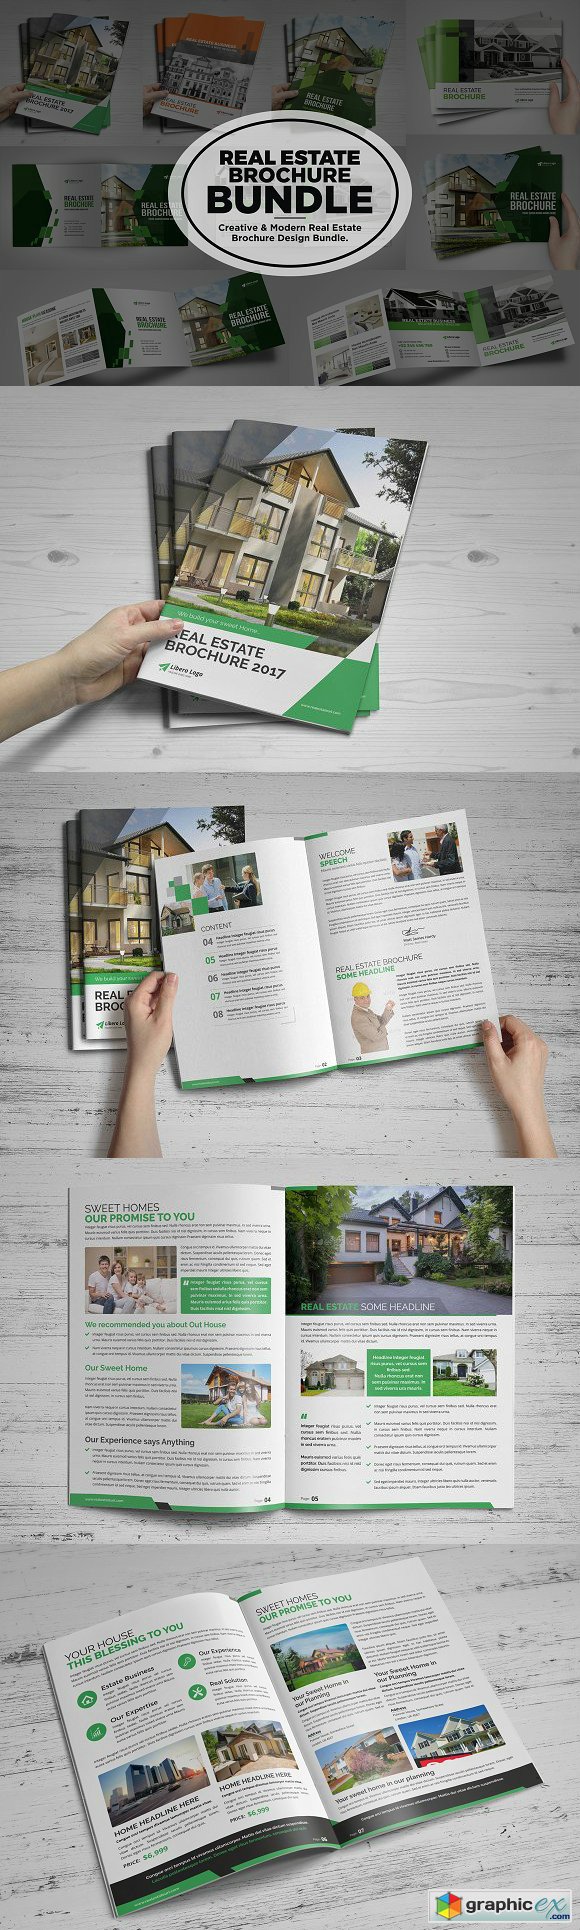 Real Estate Brochure Bundle v2